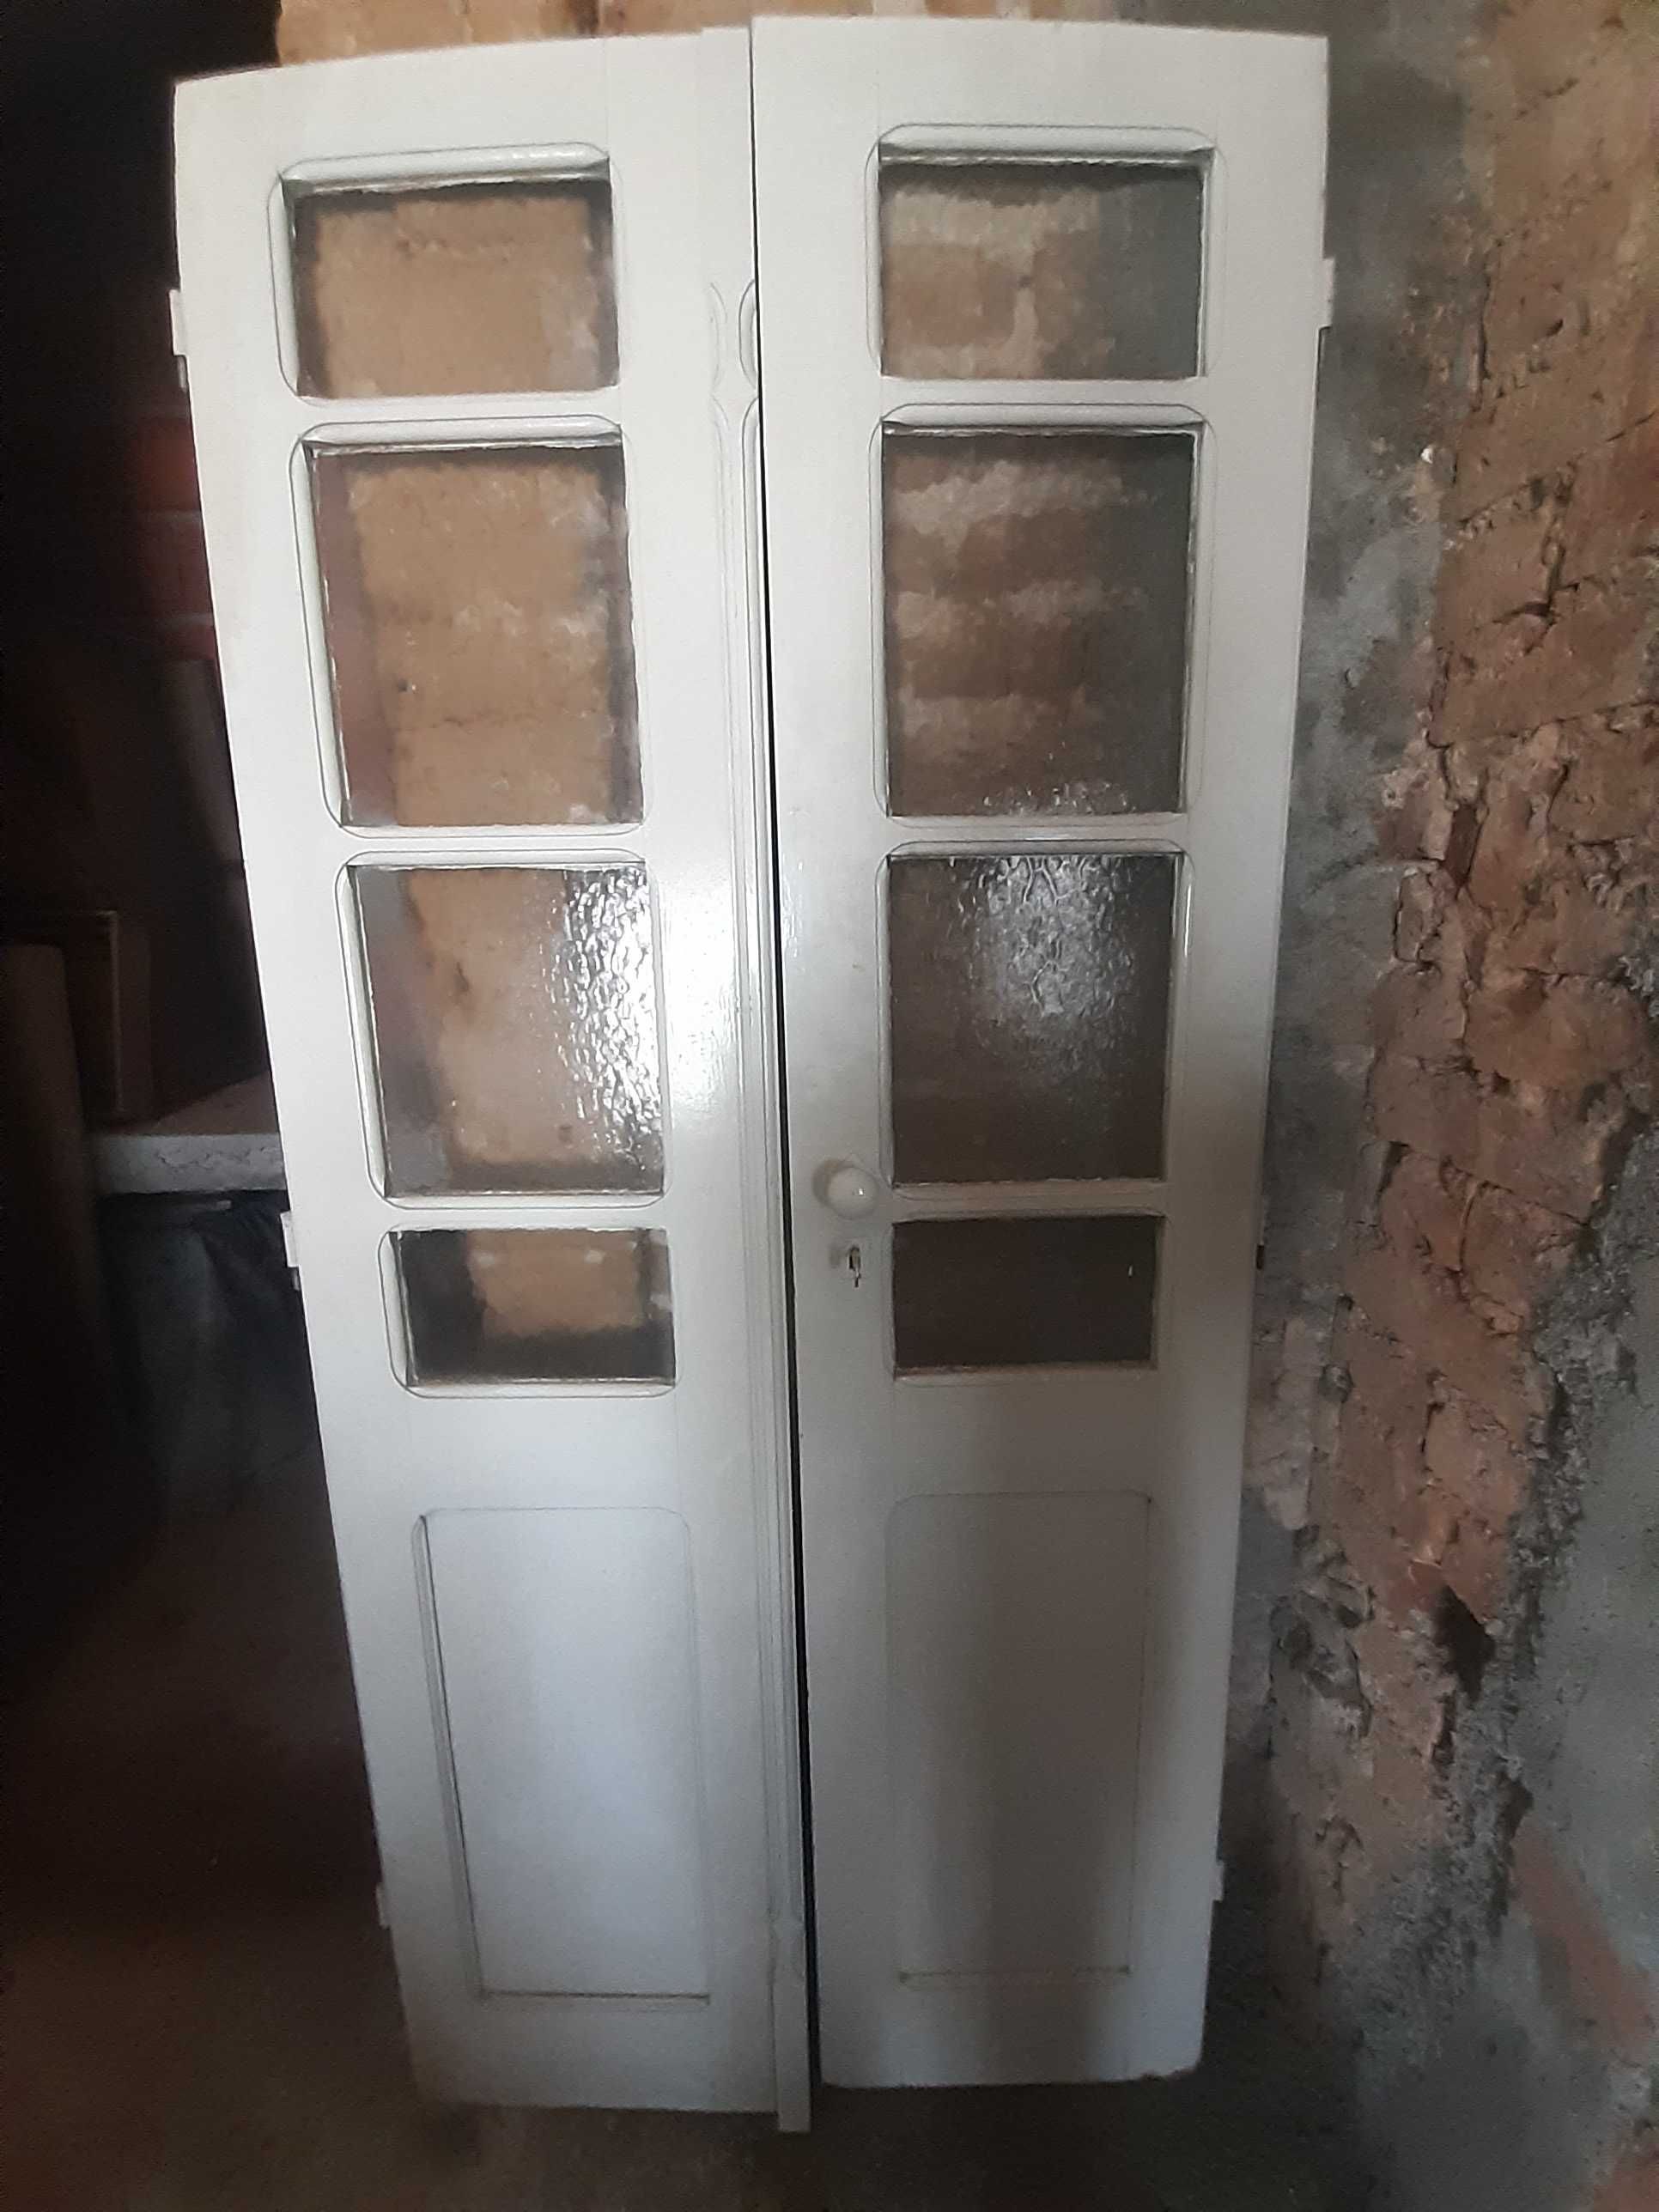 Portas de madeira antigas